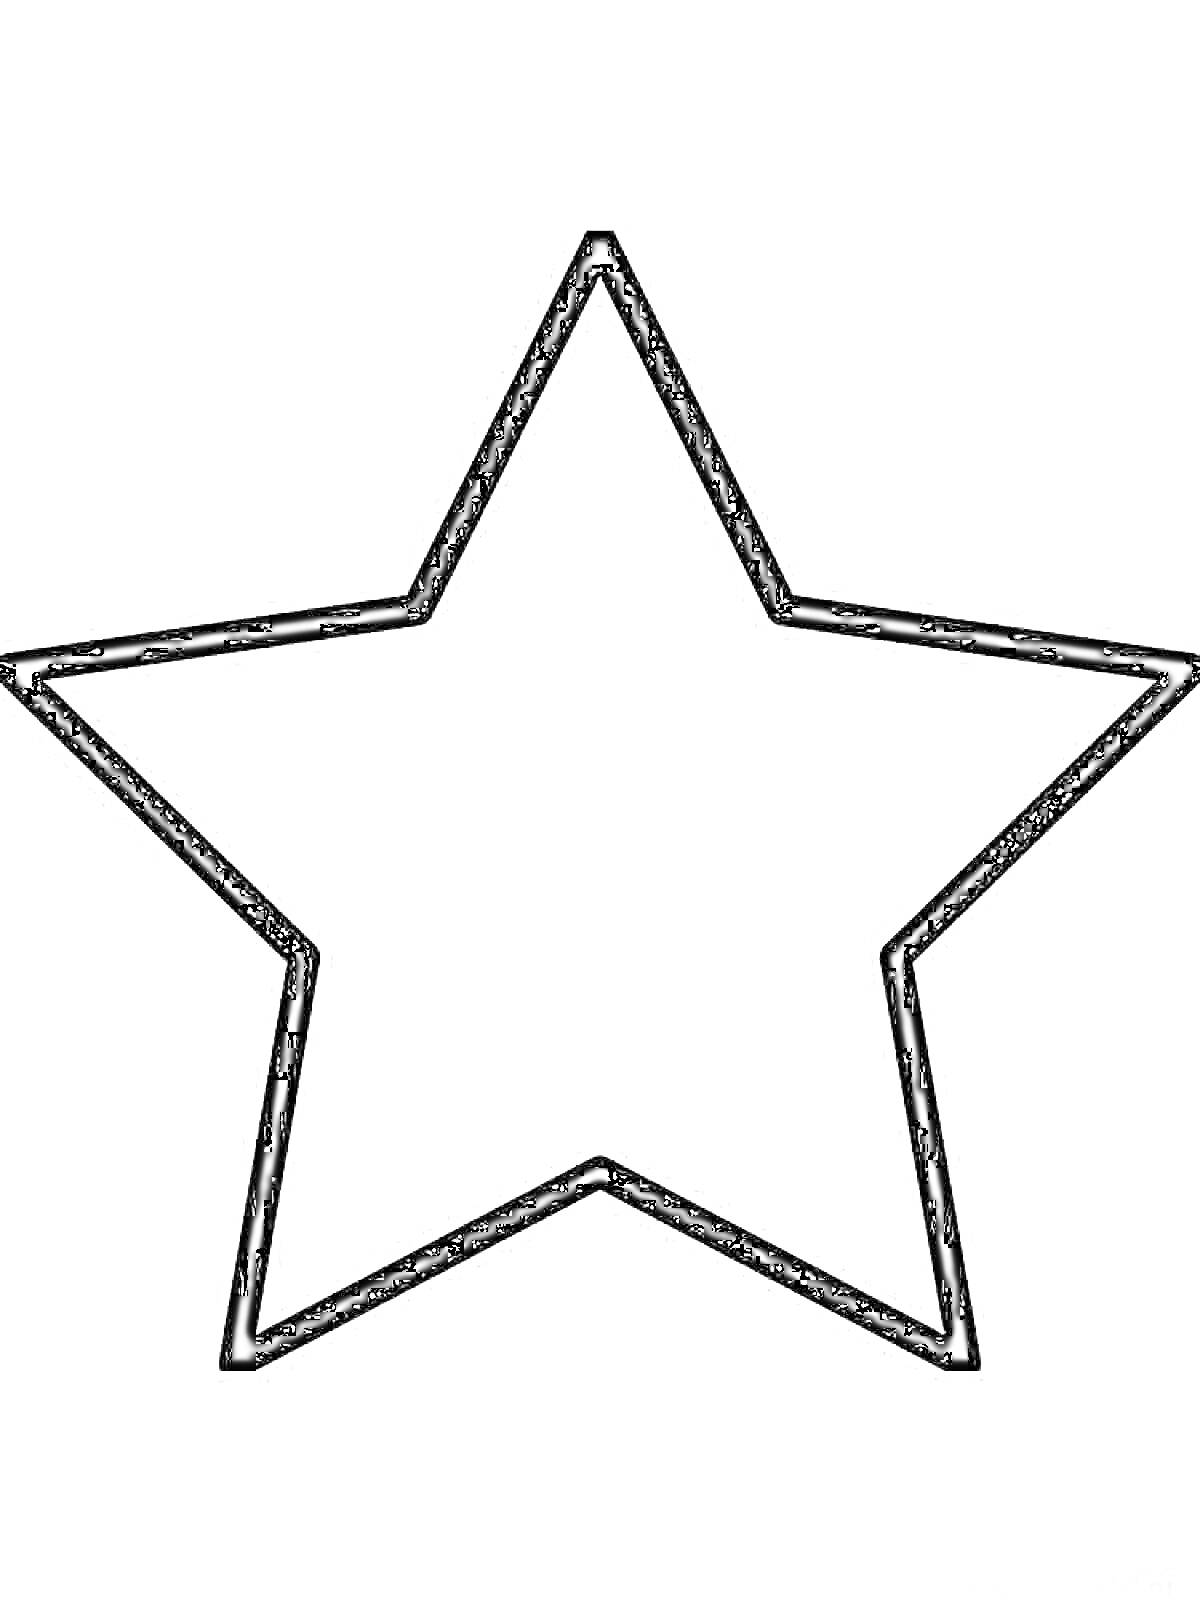 Раскраска Раскраска с контуром пятиконечной звезды